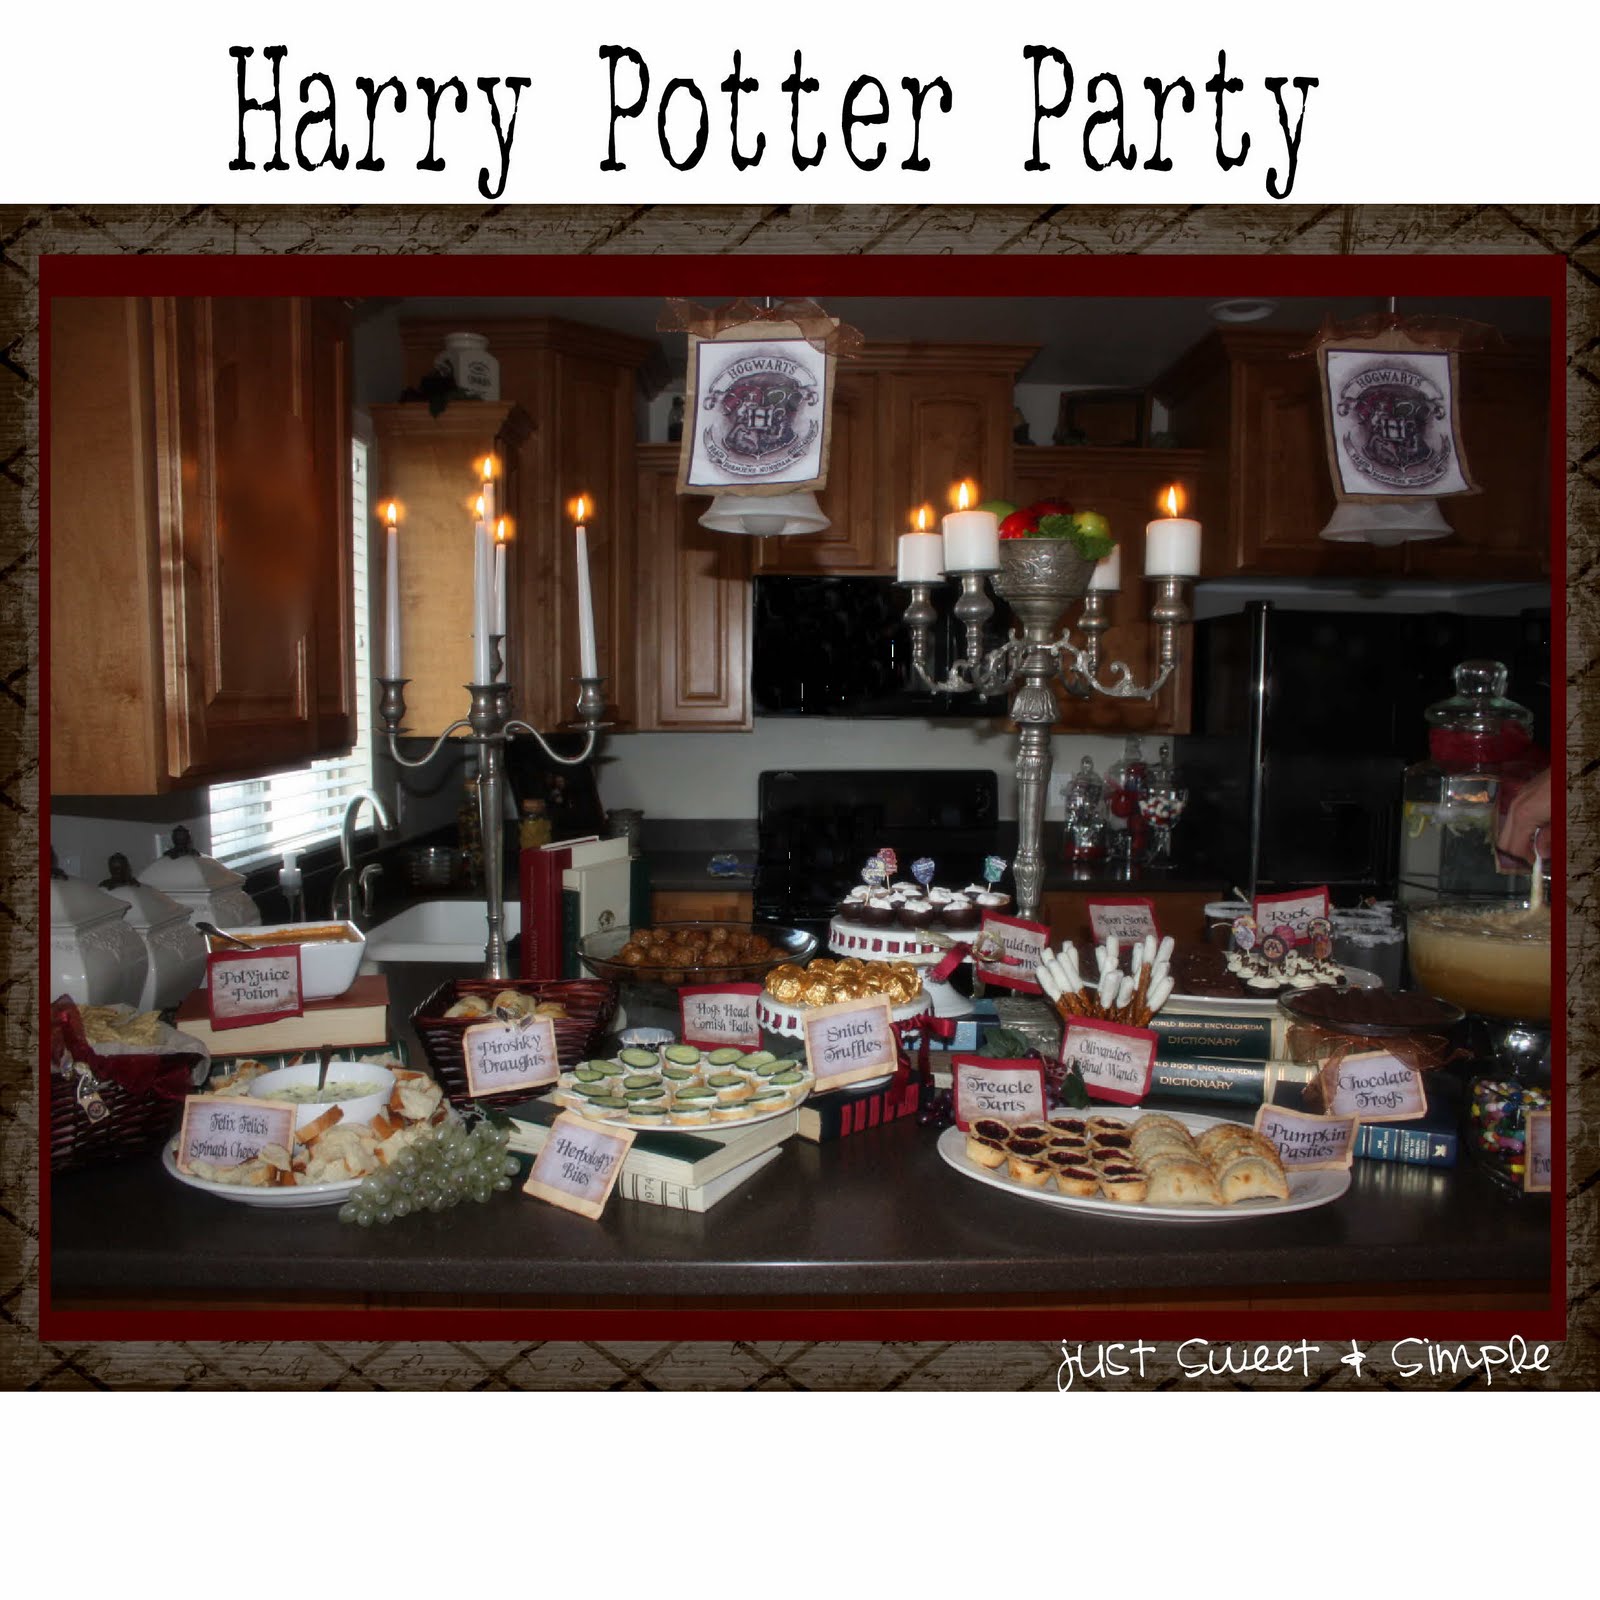 http://2.bp.blogspot.com/-rAM7RYQ6Pjs/ThpMEJE6e8I/AAAAAAAAA8g/66zc3nic2VY/s1600/Harry+potter+party+1a.JPG